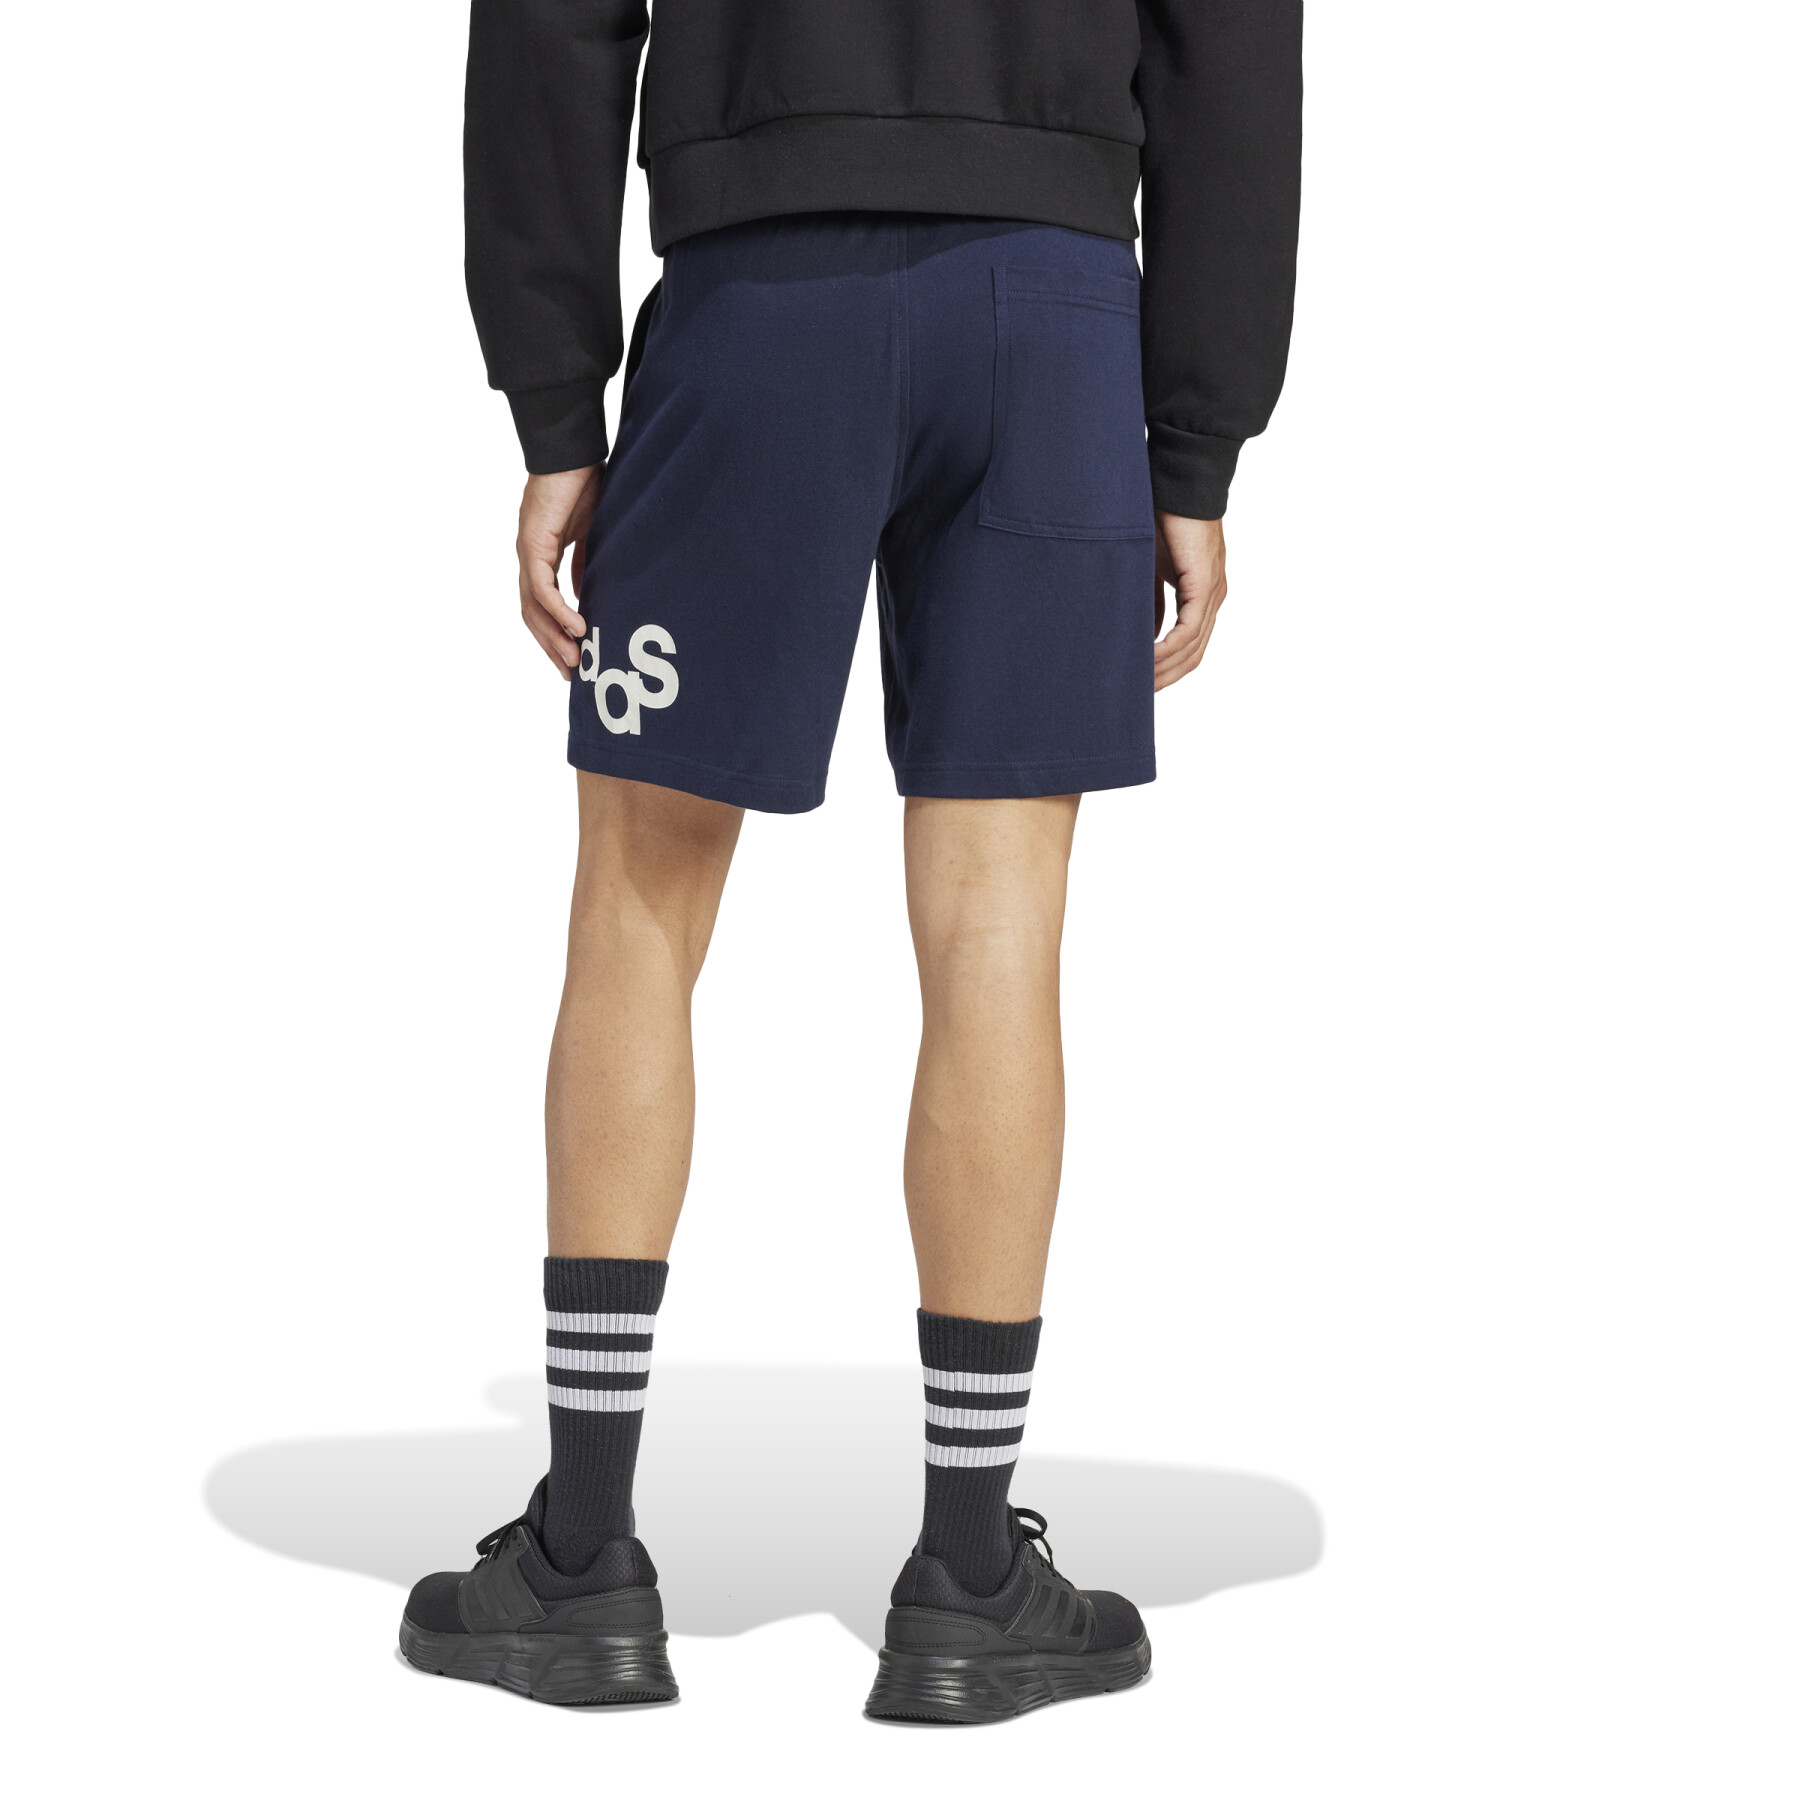 Graphic print shorts adidas